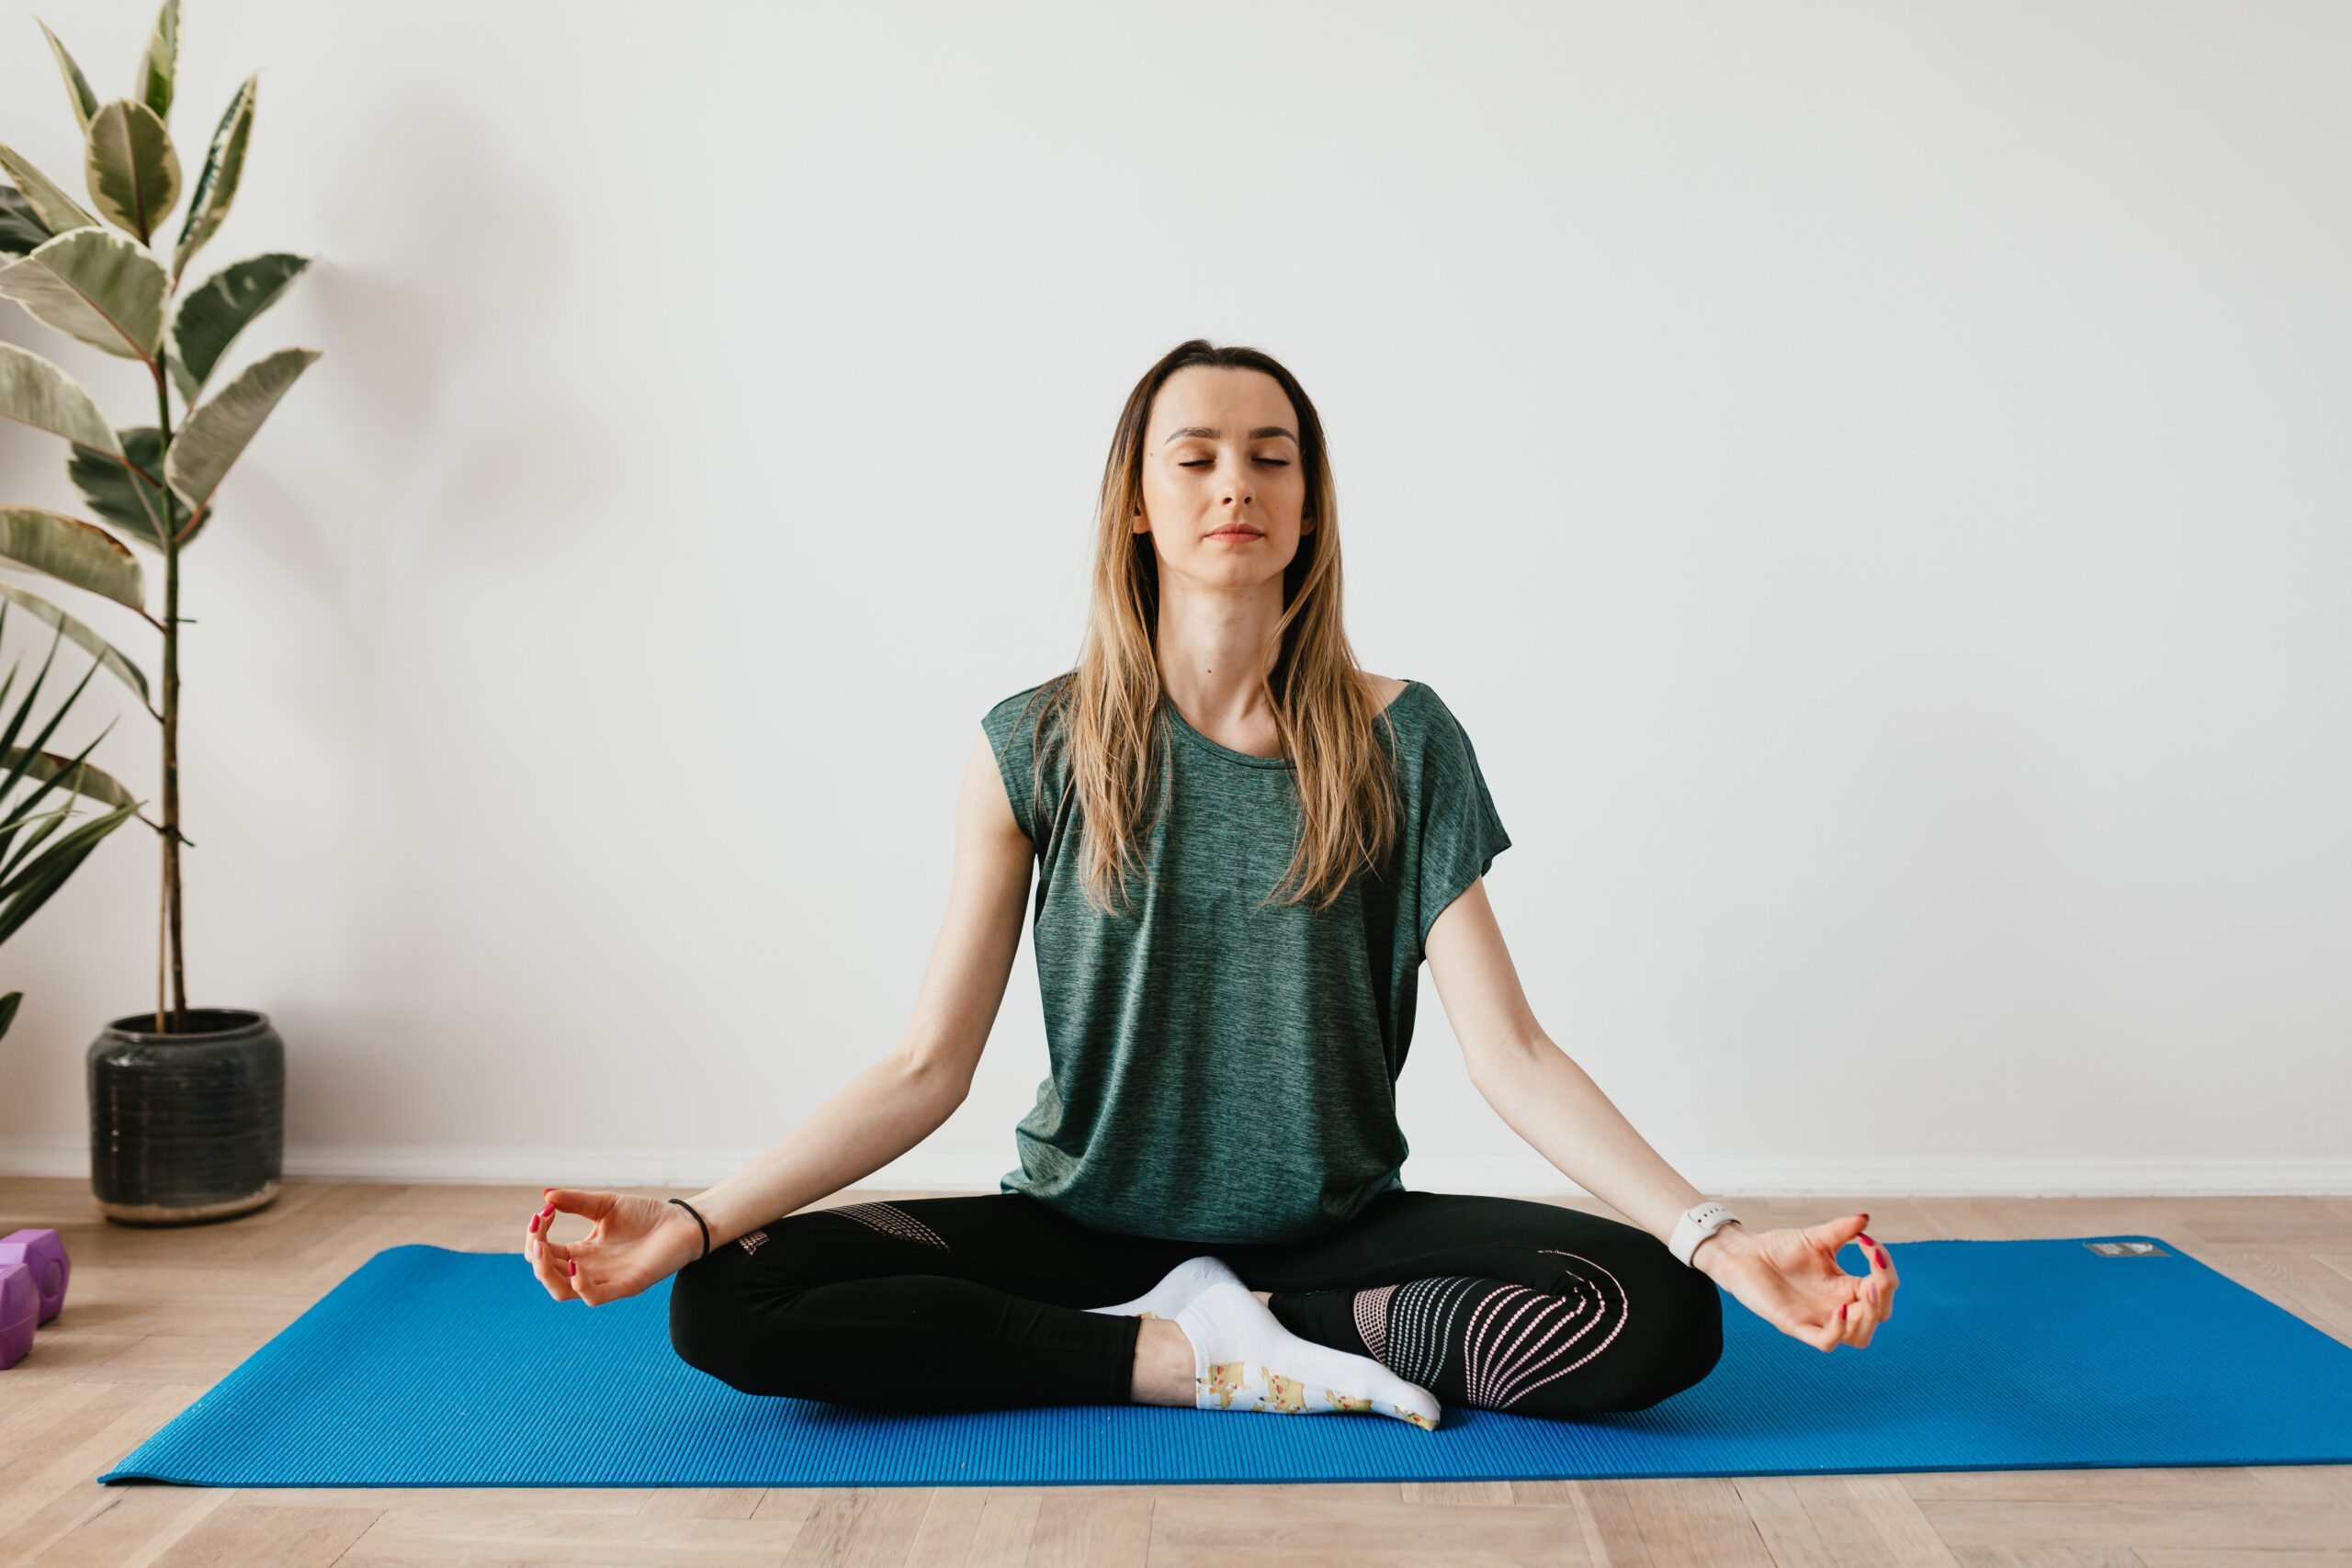 Yoga có liên quan đến việc cải thiện chất lượng cuộc sống và kiểm soát triệu chứng ở những người mắc bệnh hen suyễn ở mức độ vừa phải. (Nguồn: Internet)